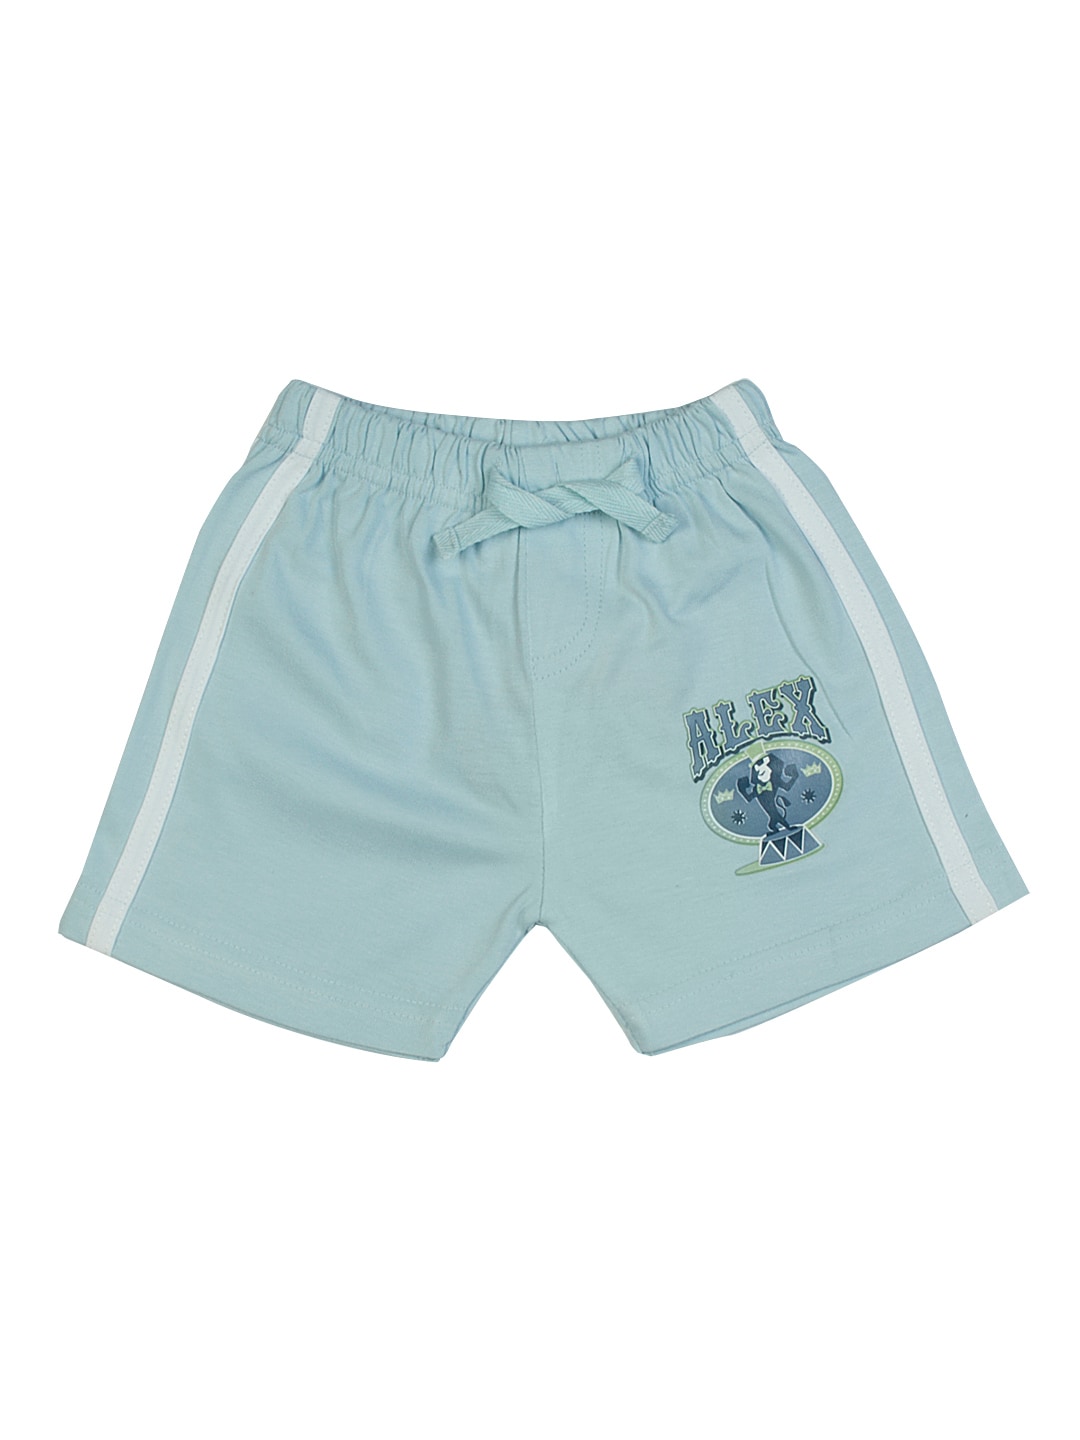 Madagascar3 Infant Boys Light Blue Shorts